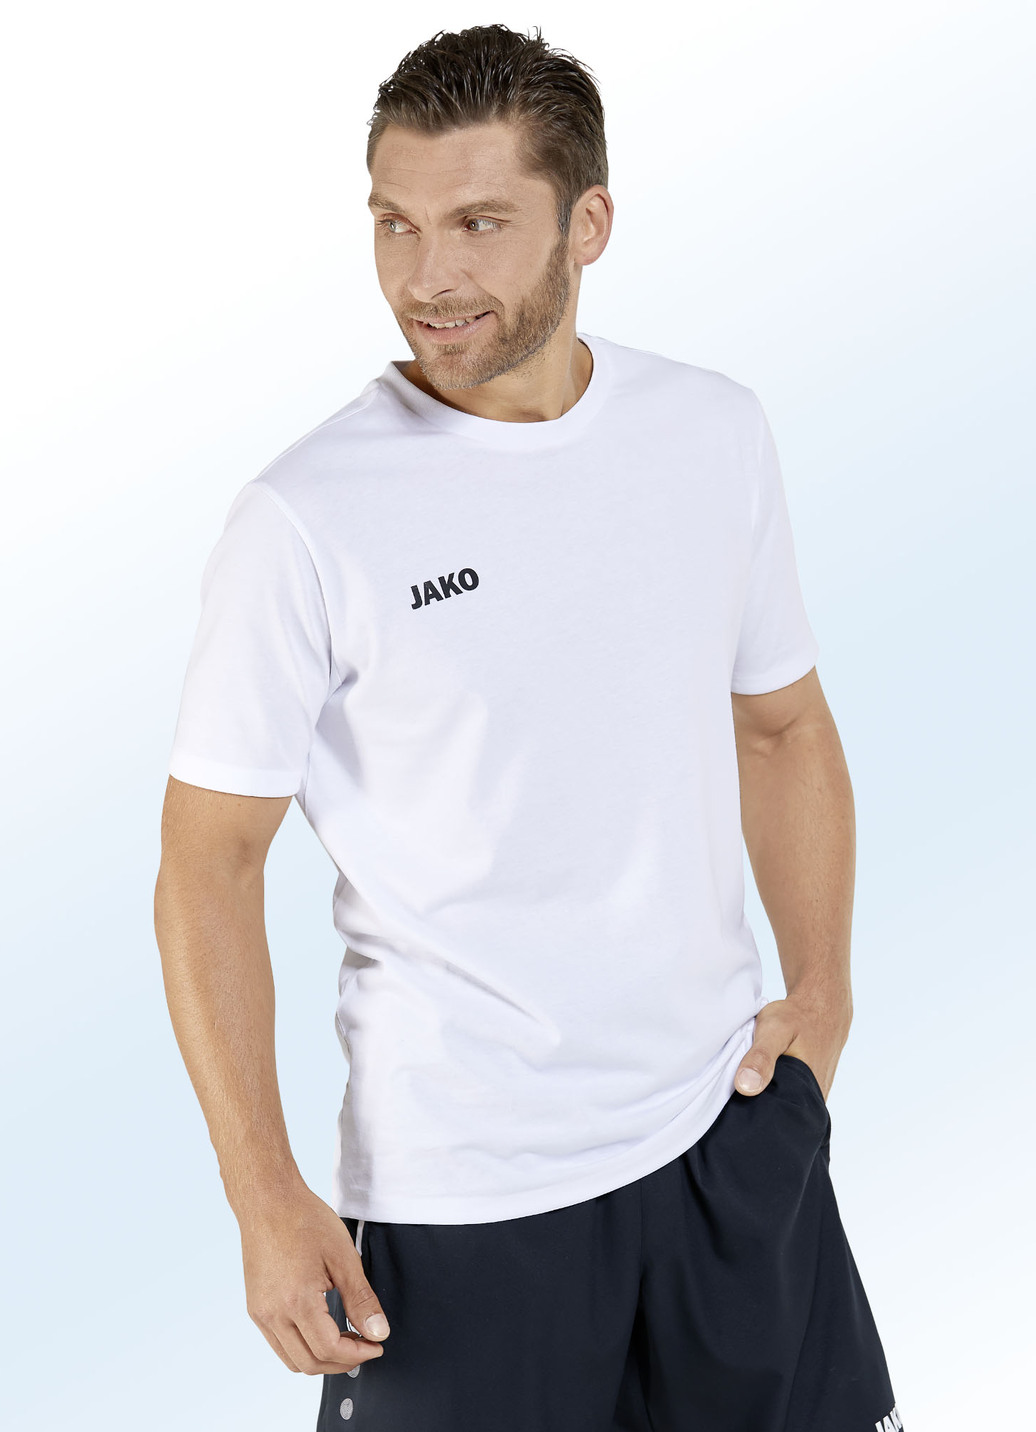 Doppelpack Shirt von "Jako" in 6 Farben, Größe S (44), Weiss-Schwarz von Jako